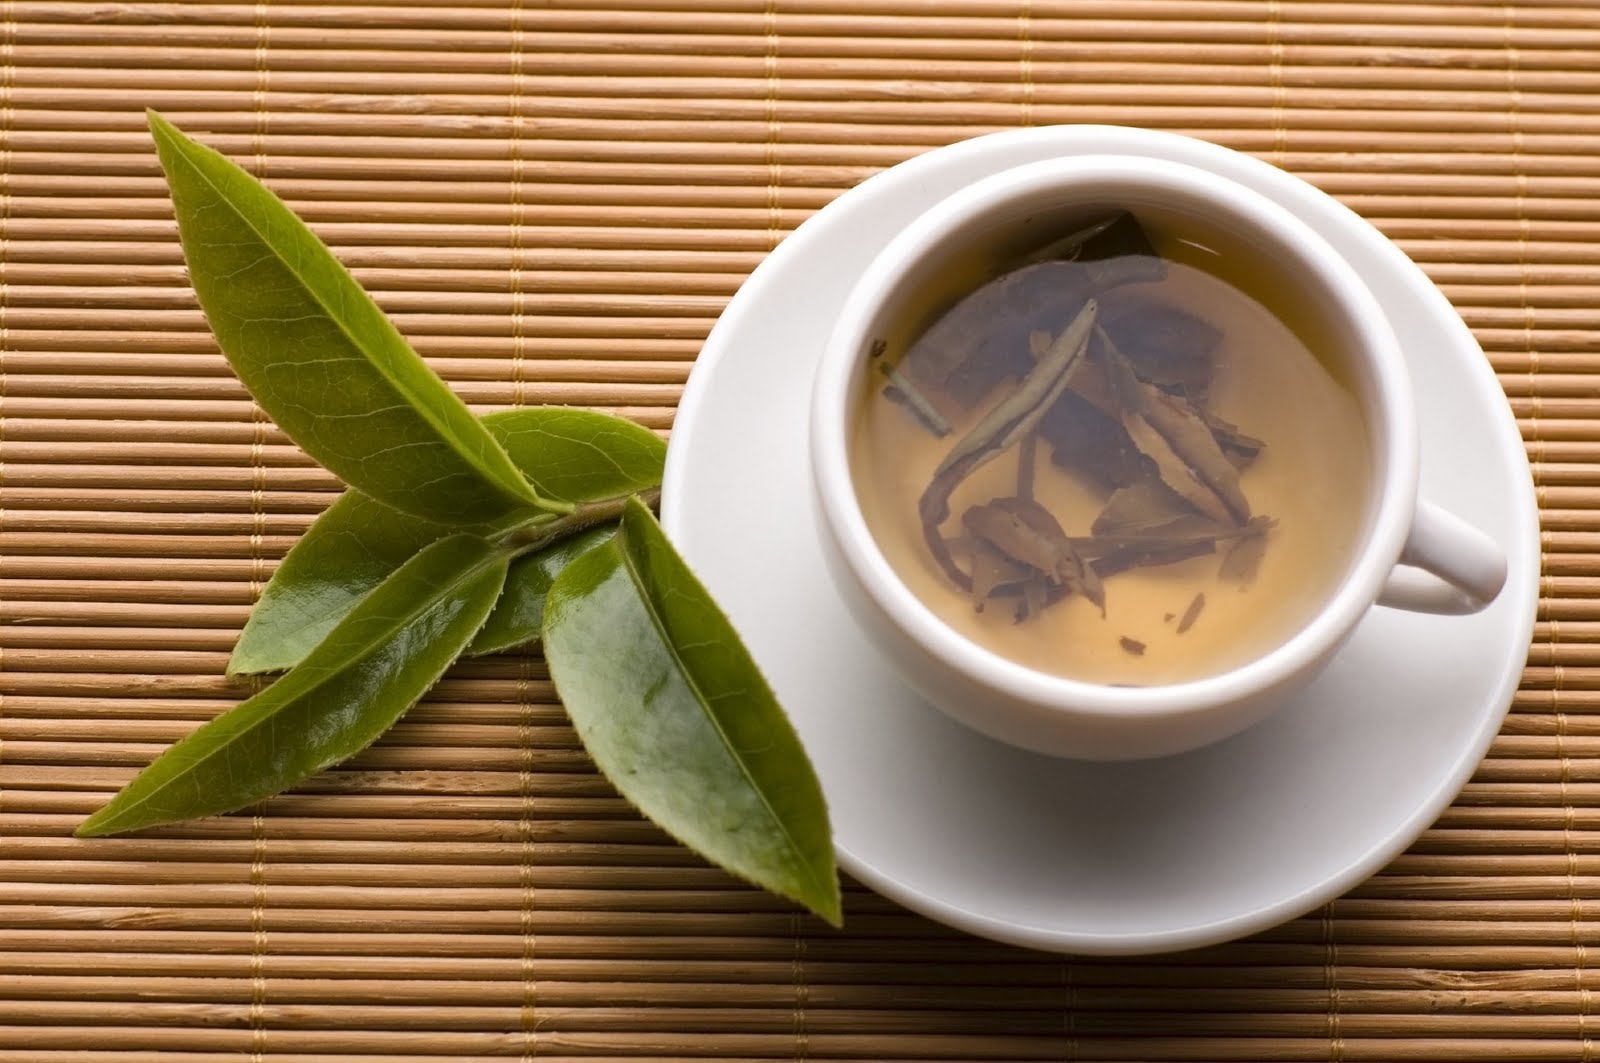 Чай с лавровым листом